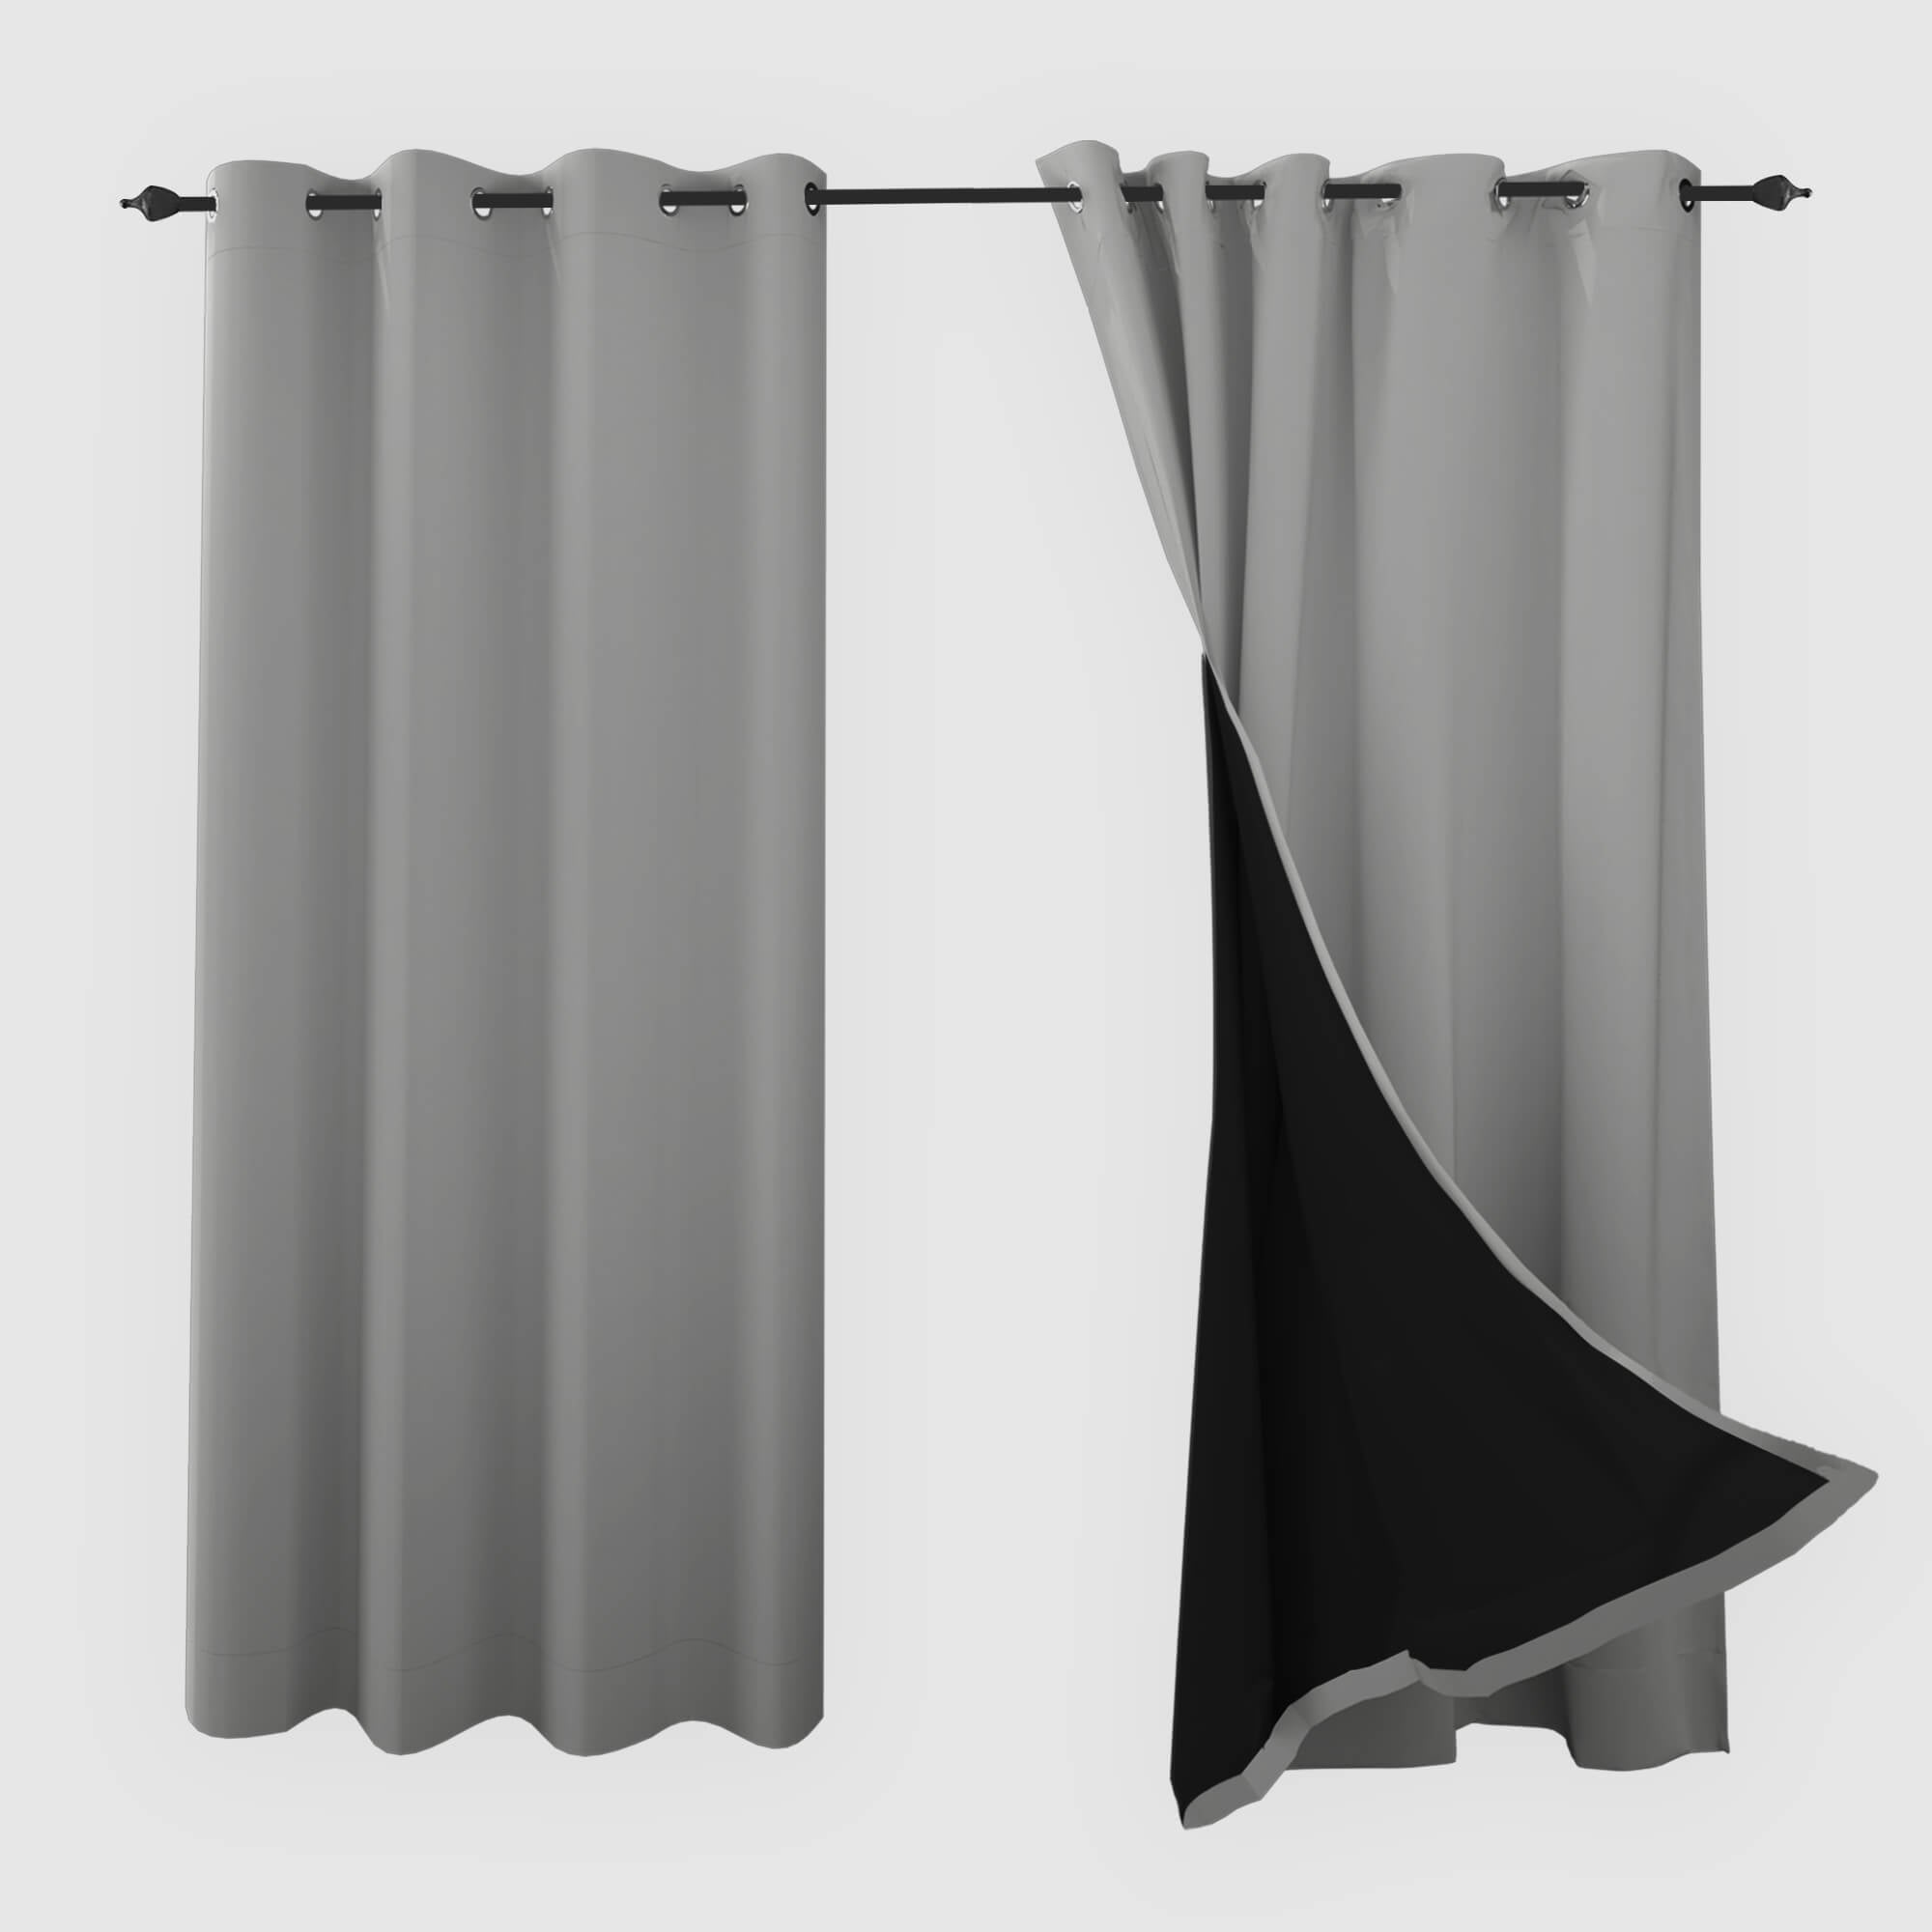 SNOWCITY Blackout Curtains Grey - Grommet Top